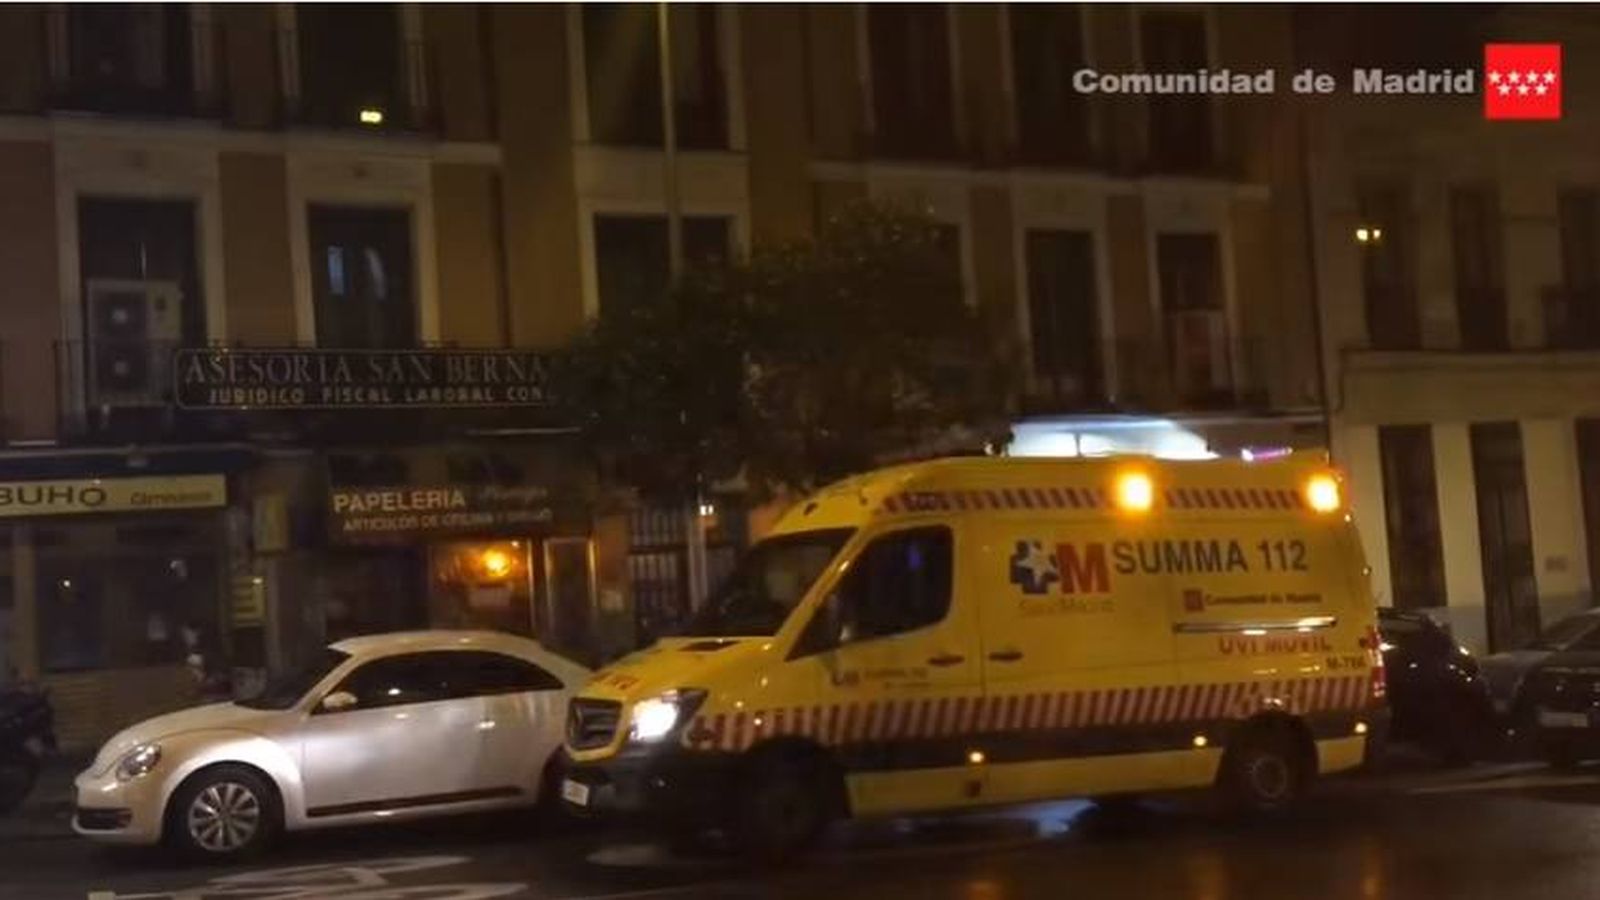 Foto: Imagen de la llegada de la ambulancia a la zona. (Comunidad de Madrid) 